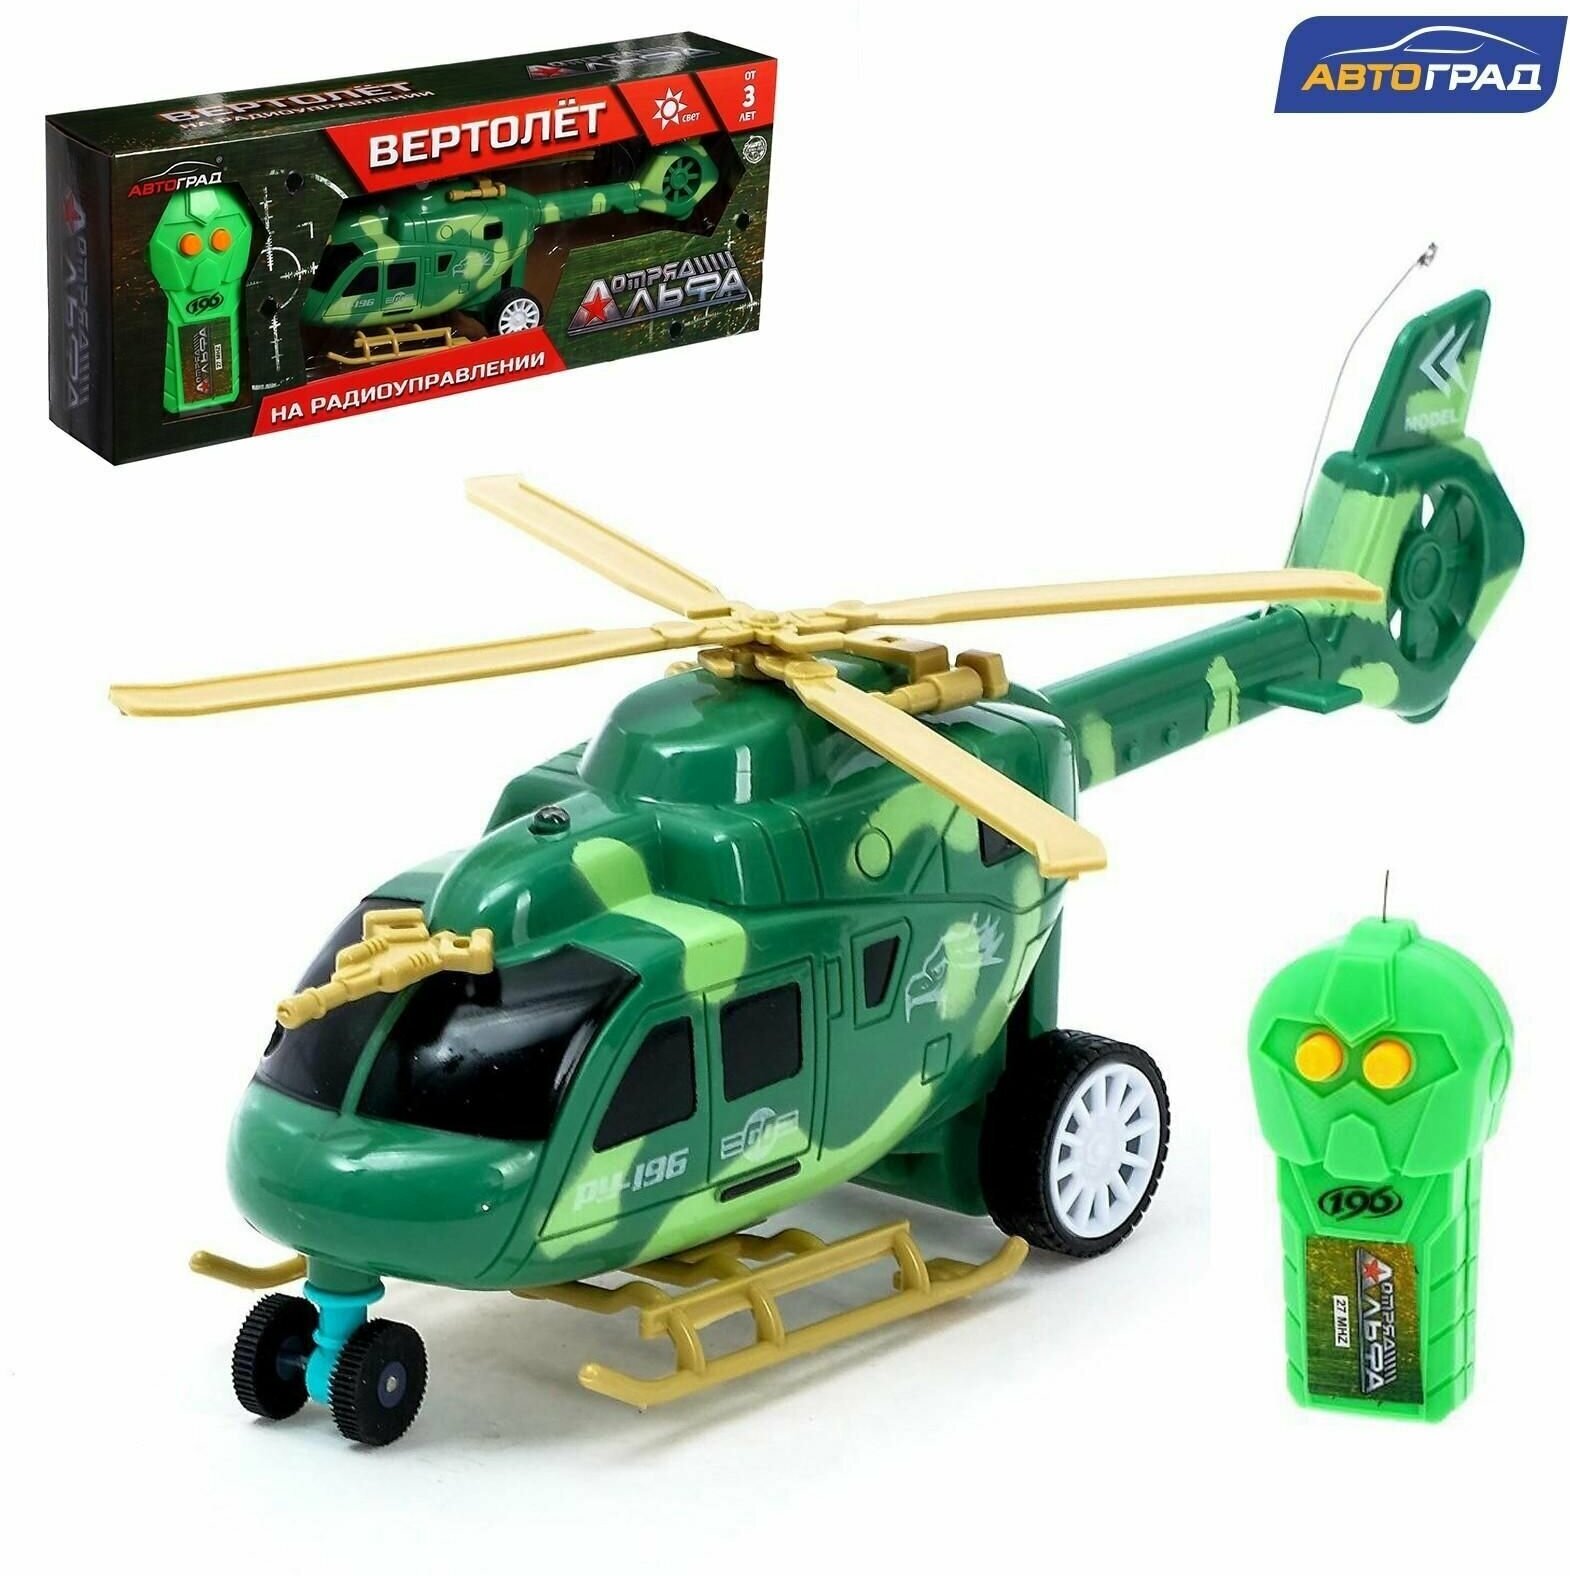 Вертолет радиоуправляемый Штурм в небе, свет, работает от батареек, цвет зелёный